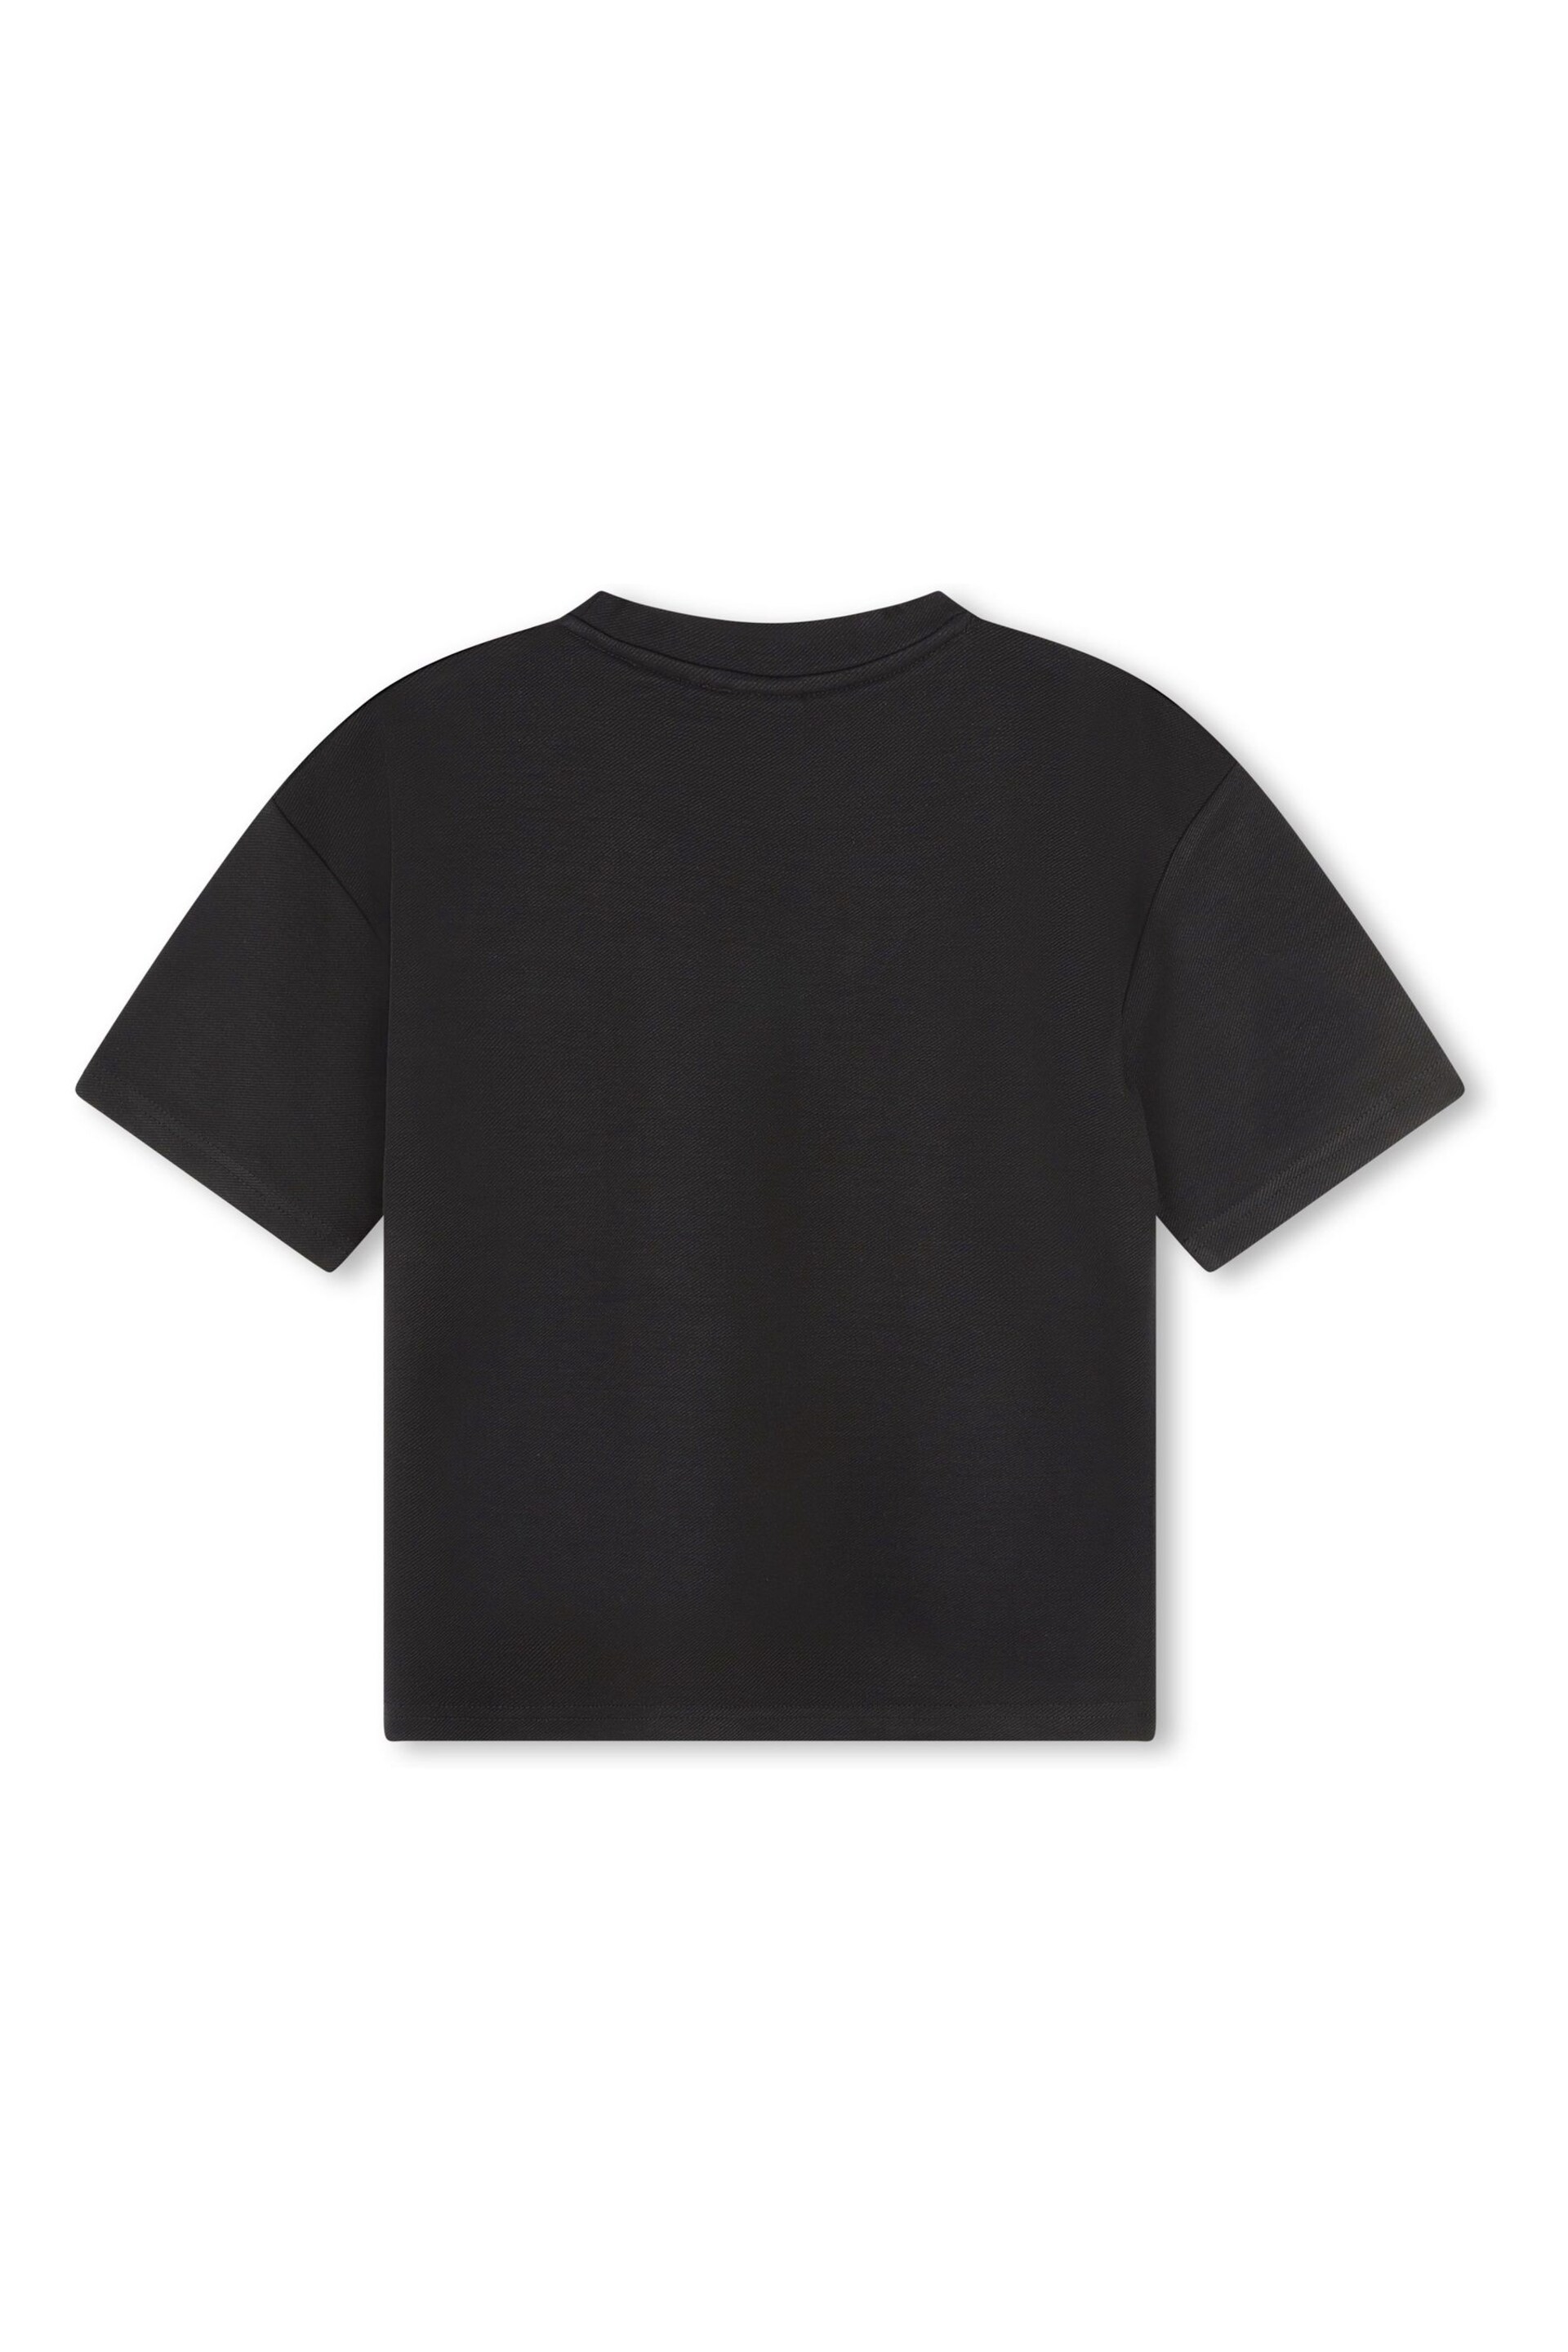 HUGO Black Patched Pocket Logo T-Shirt - Image 2 of 2